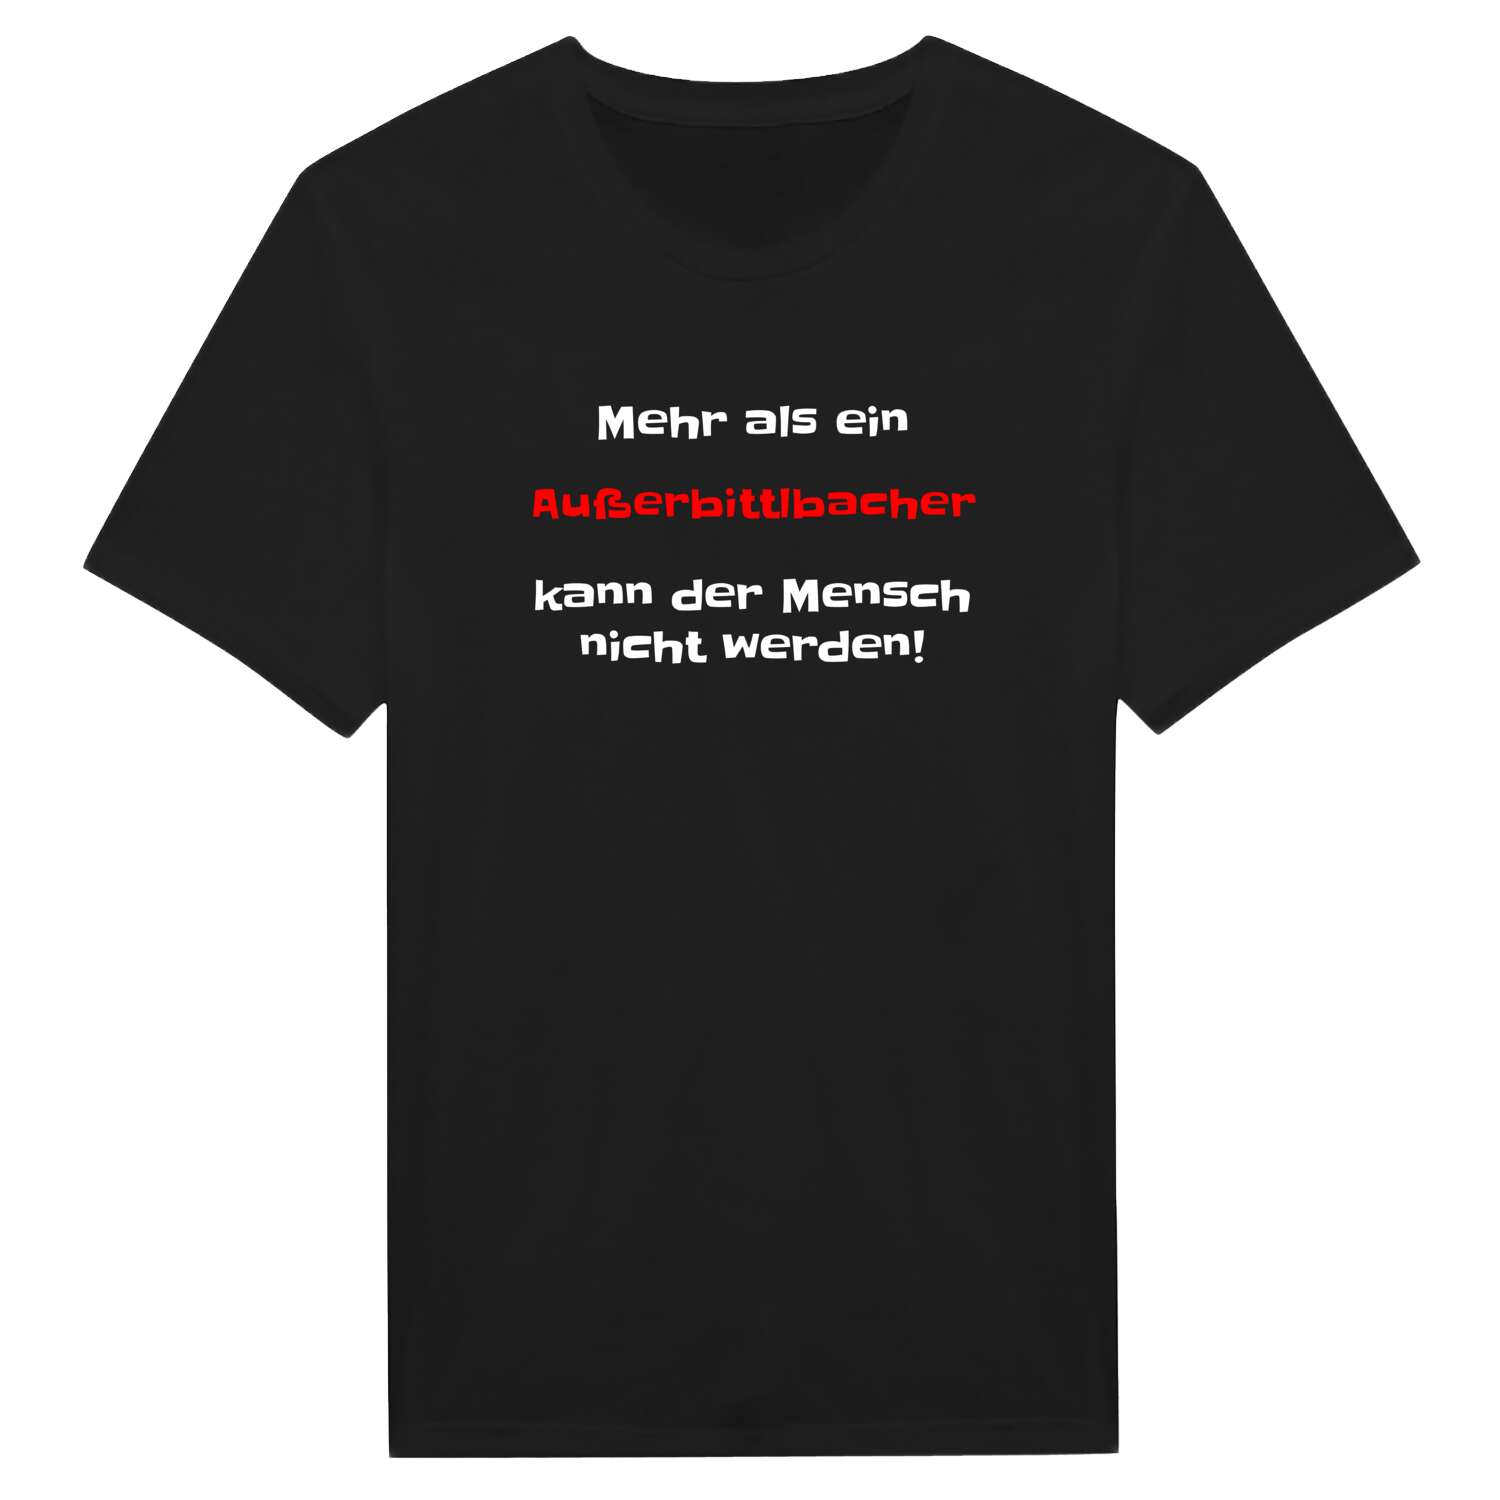 Außerbittlbach T-Shirt »Mehr als ein«